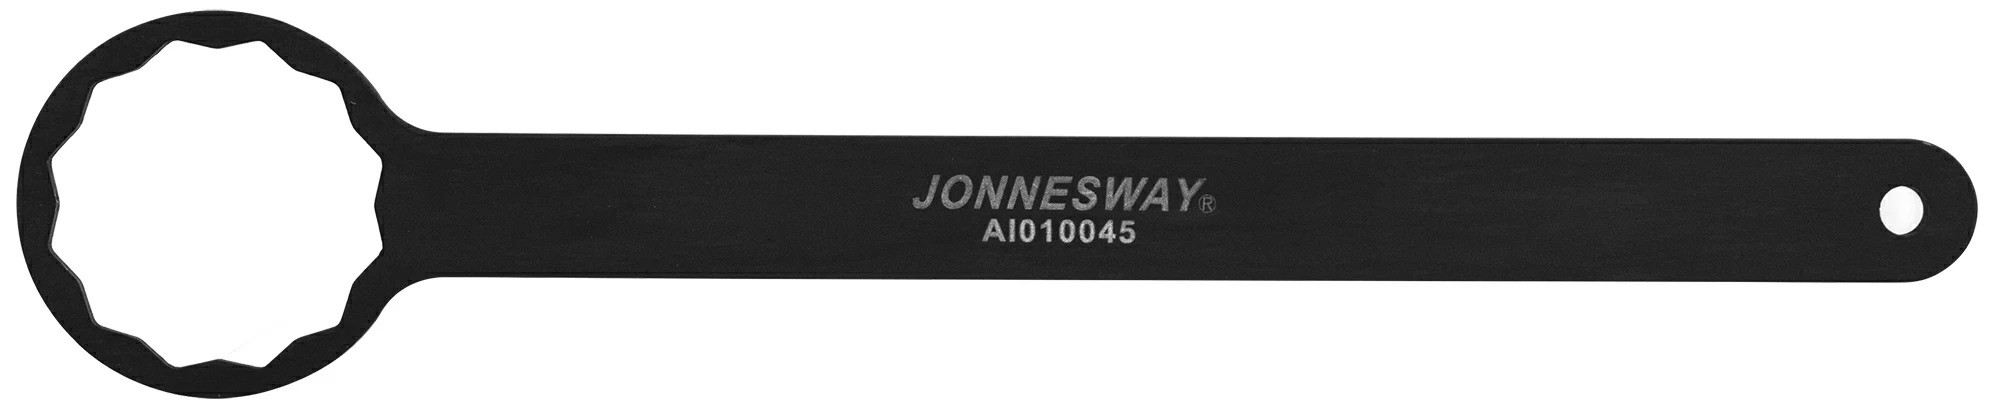 Ключ для обслуживания привода распределительного вала Subaru Impreza, 12-гранный Jonnesway AI010045 - фото